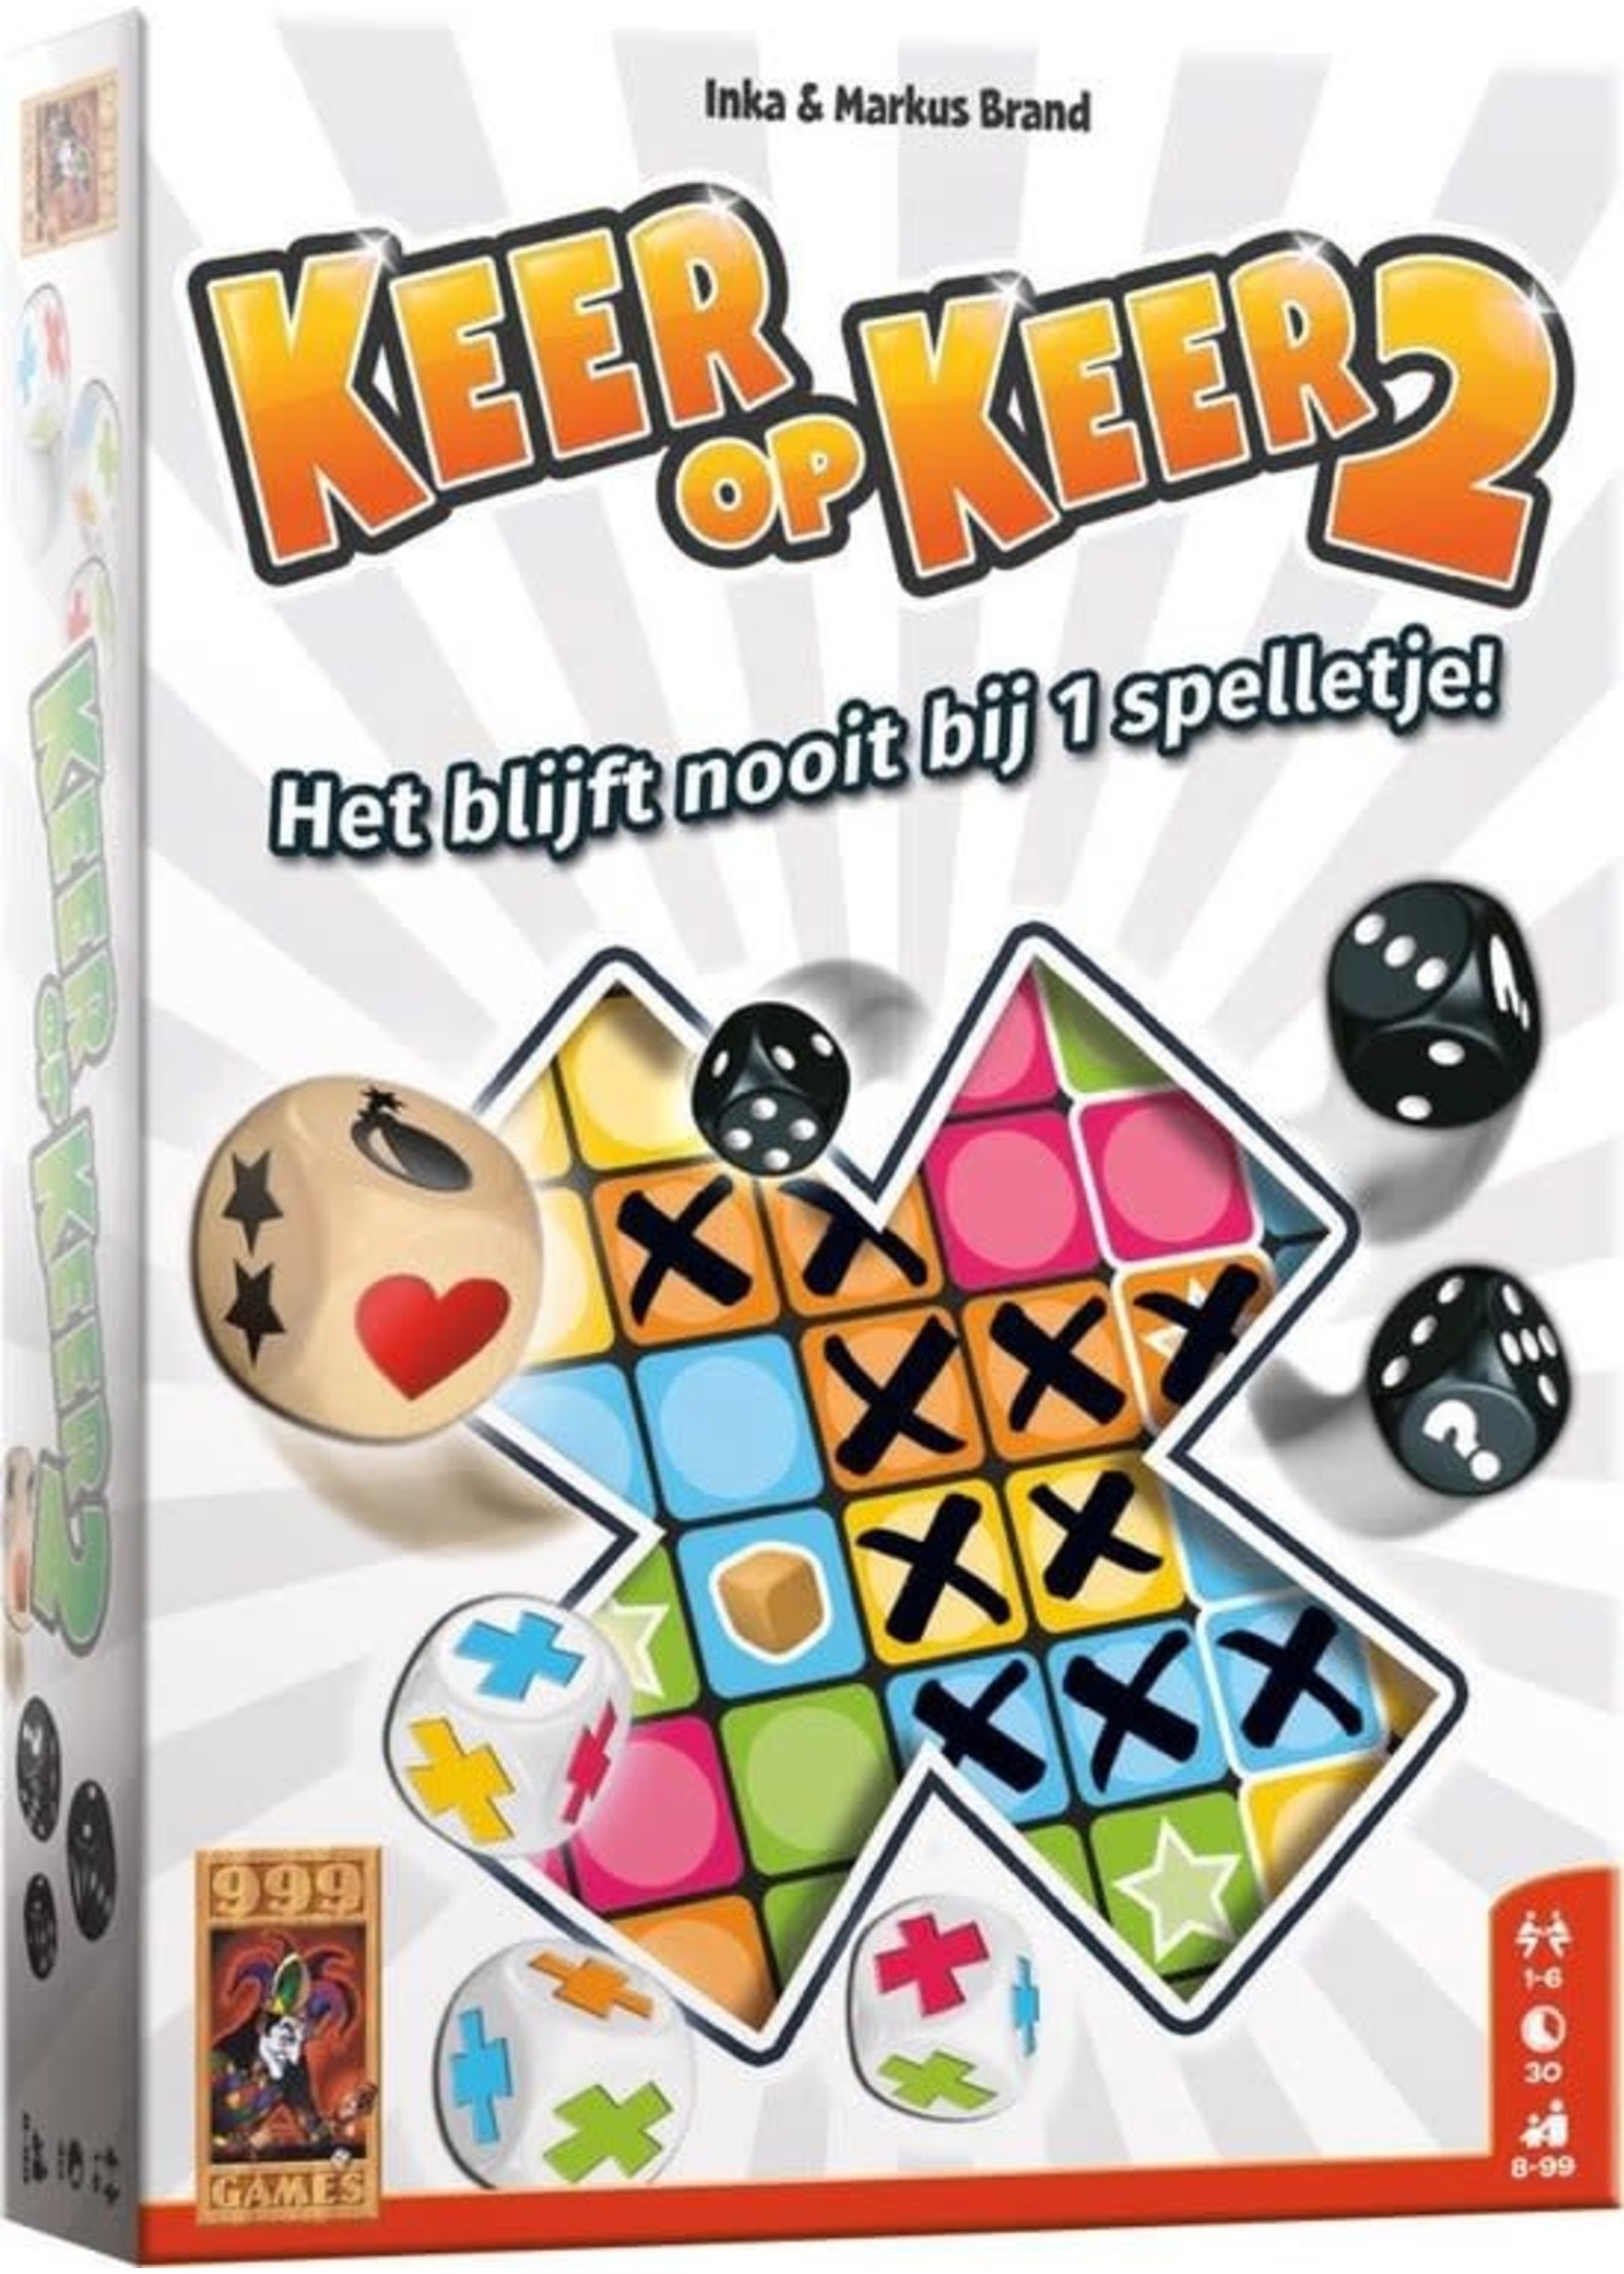 999 Games Dobbelspel Keer op Keer 2